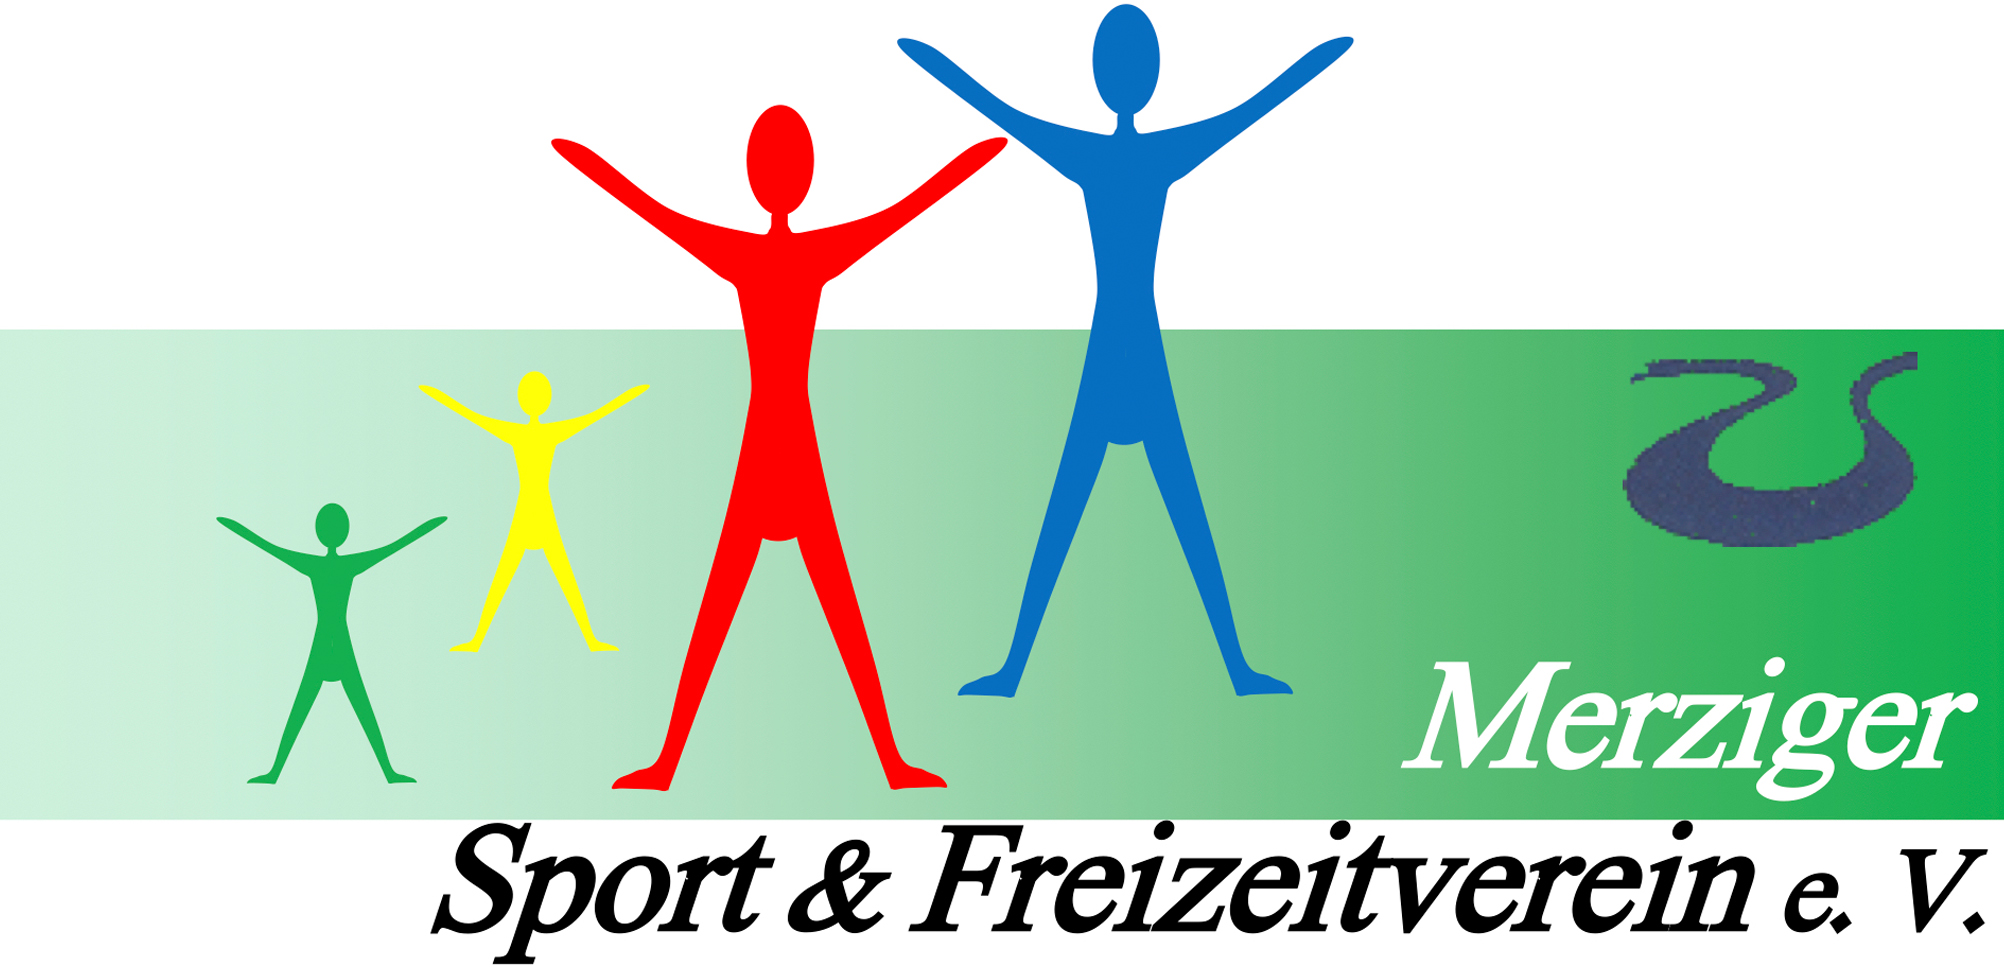 Profilbild des Vereins Merziger Sport & Freizeitverein e.V.